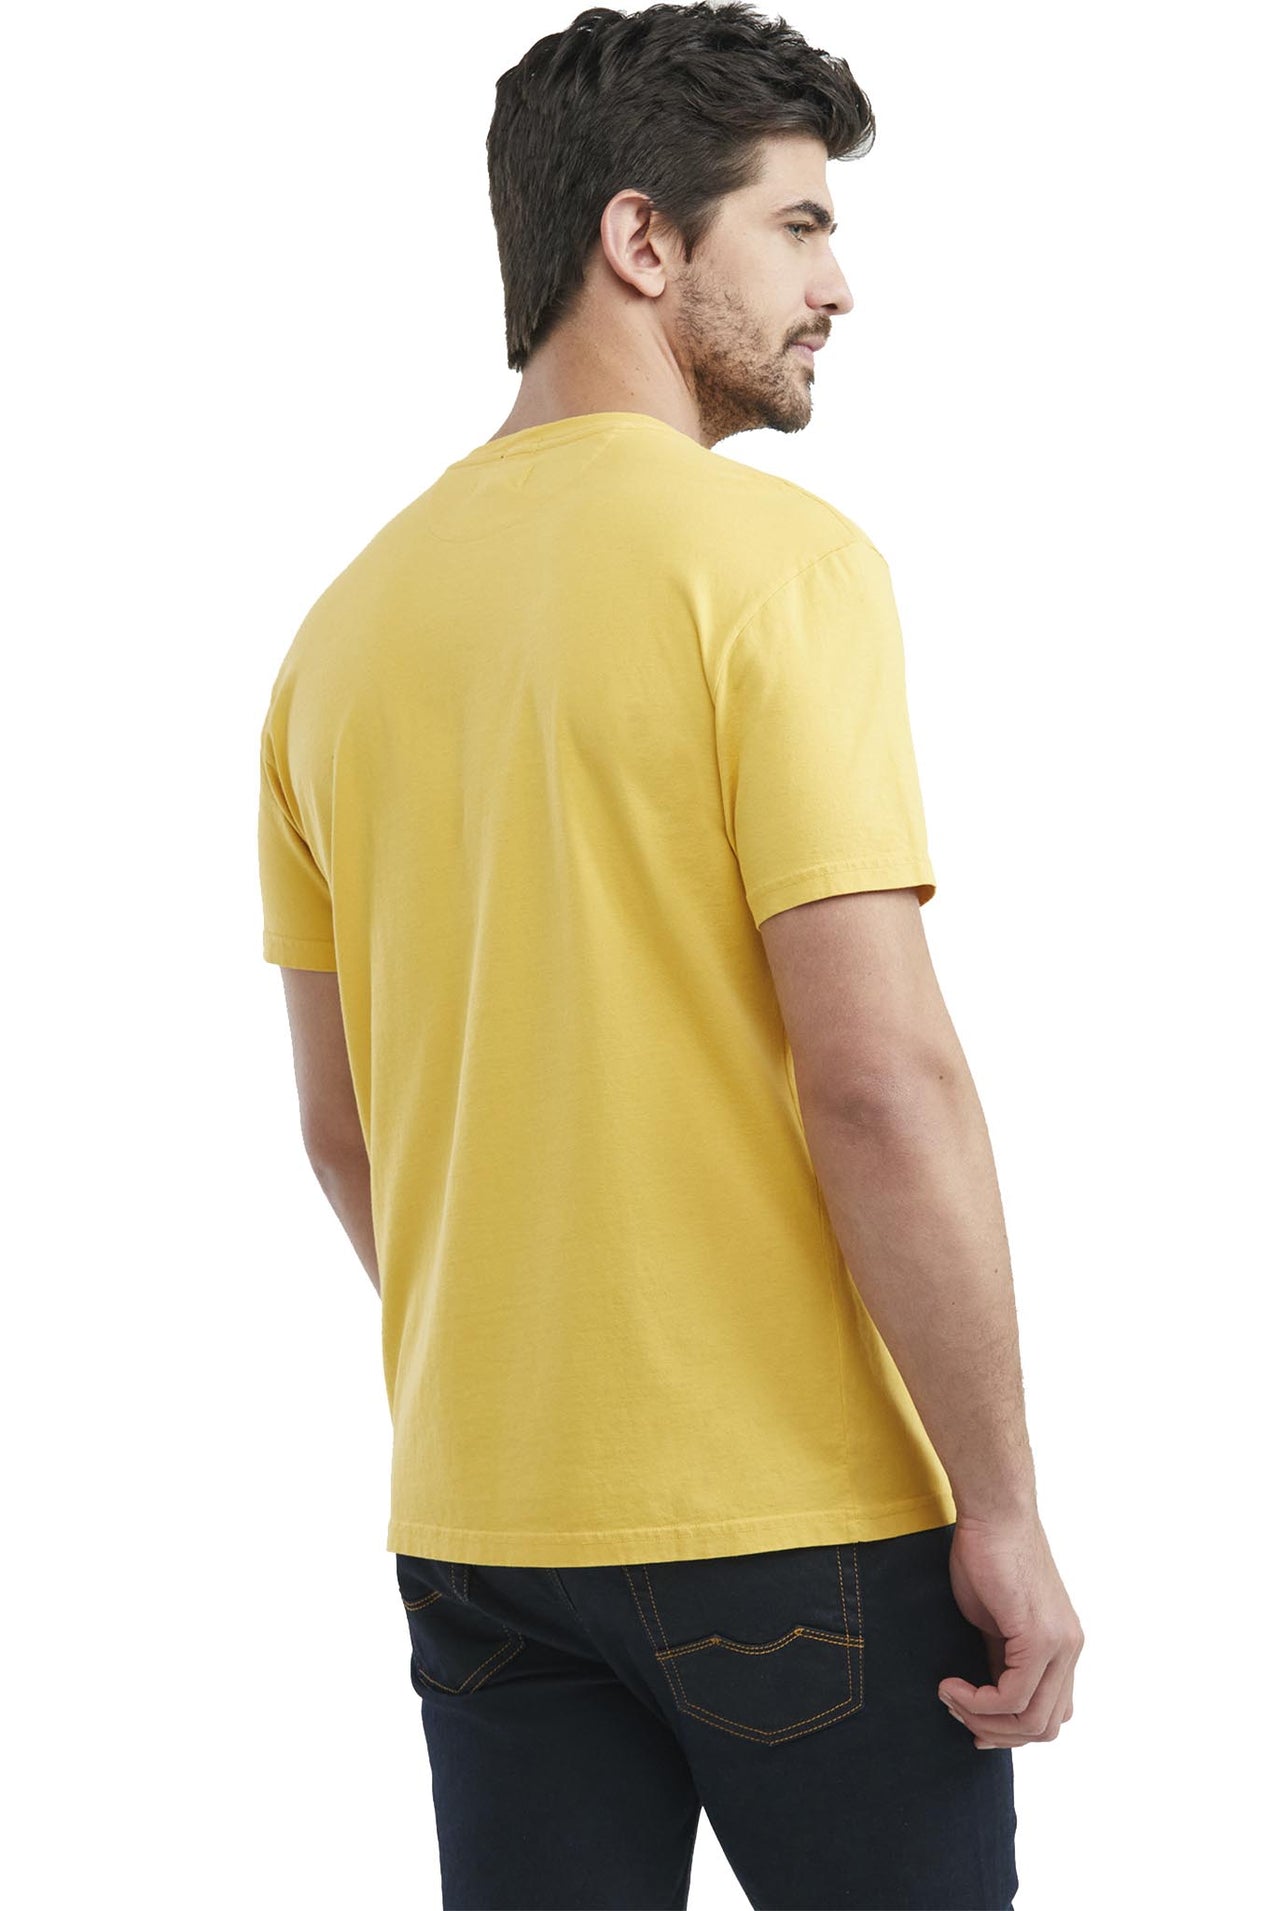 Camiseta Chevignon Manga Corta Cuello Redondo En rib, Color Amarillo - 649E001-T01